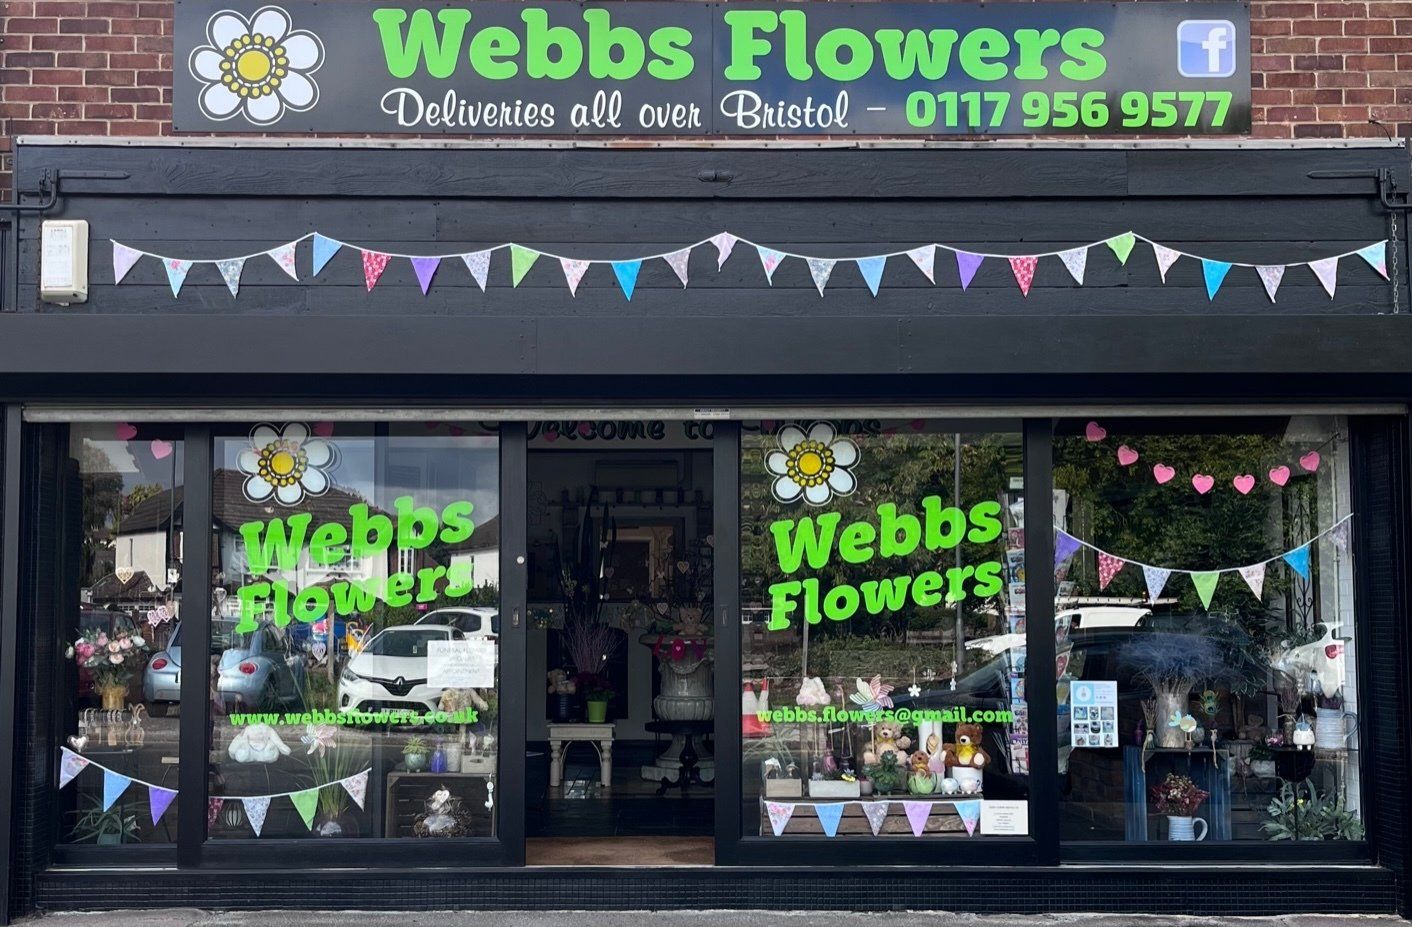 Webbs Flowers - The Shop